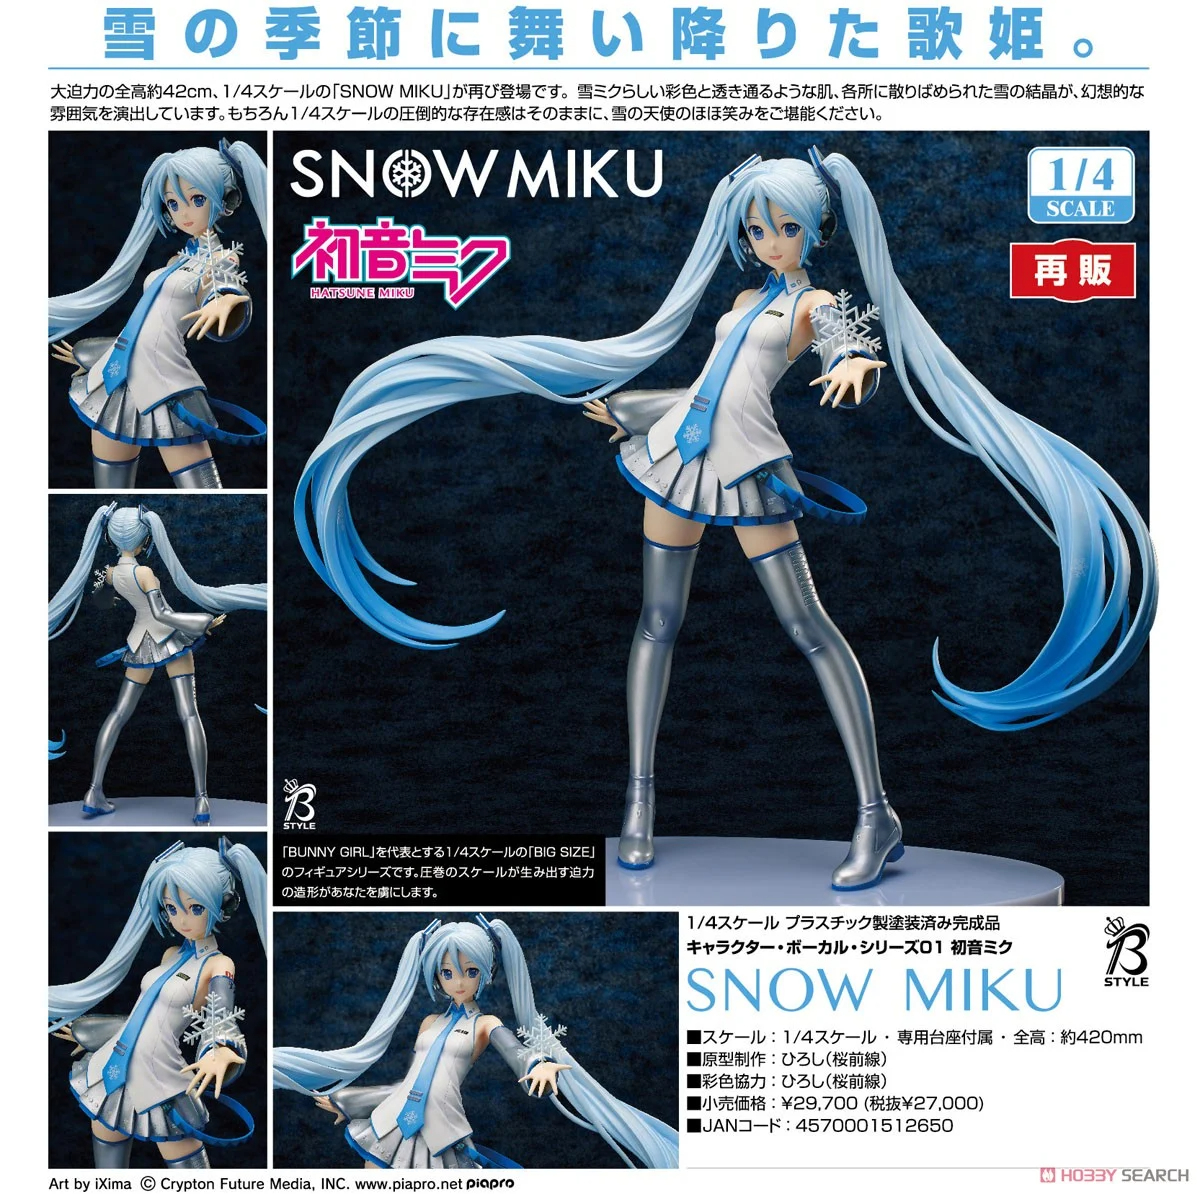 【再販】B-style『SNOW MIKU』キャラクター・ボーカル・シリーズ01 1/4 完成品フィギュア-007